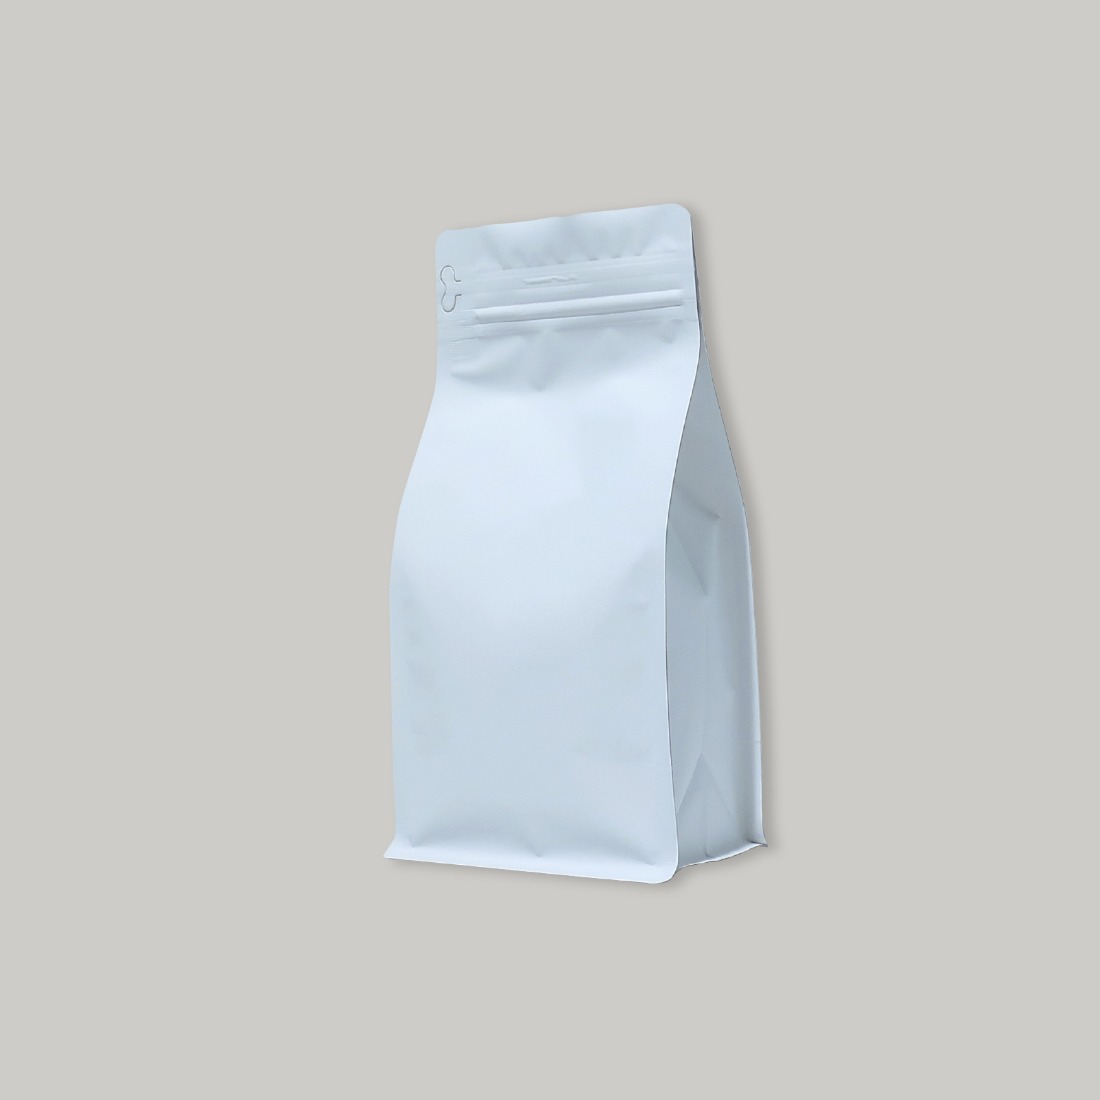 Zipper Pouch Tab Type VMPET White Bag